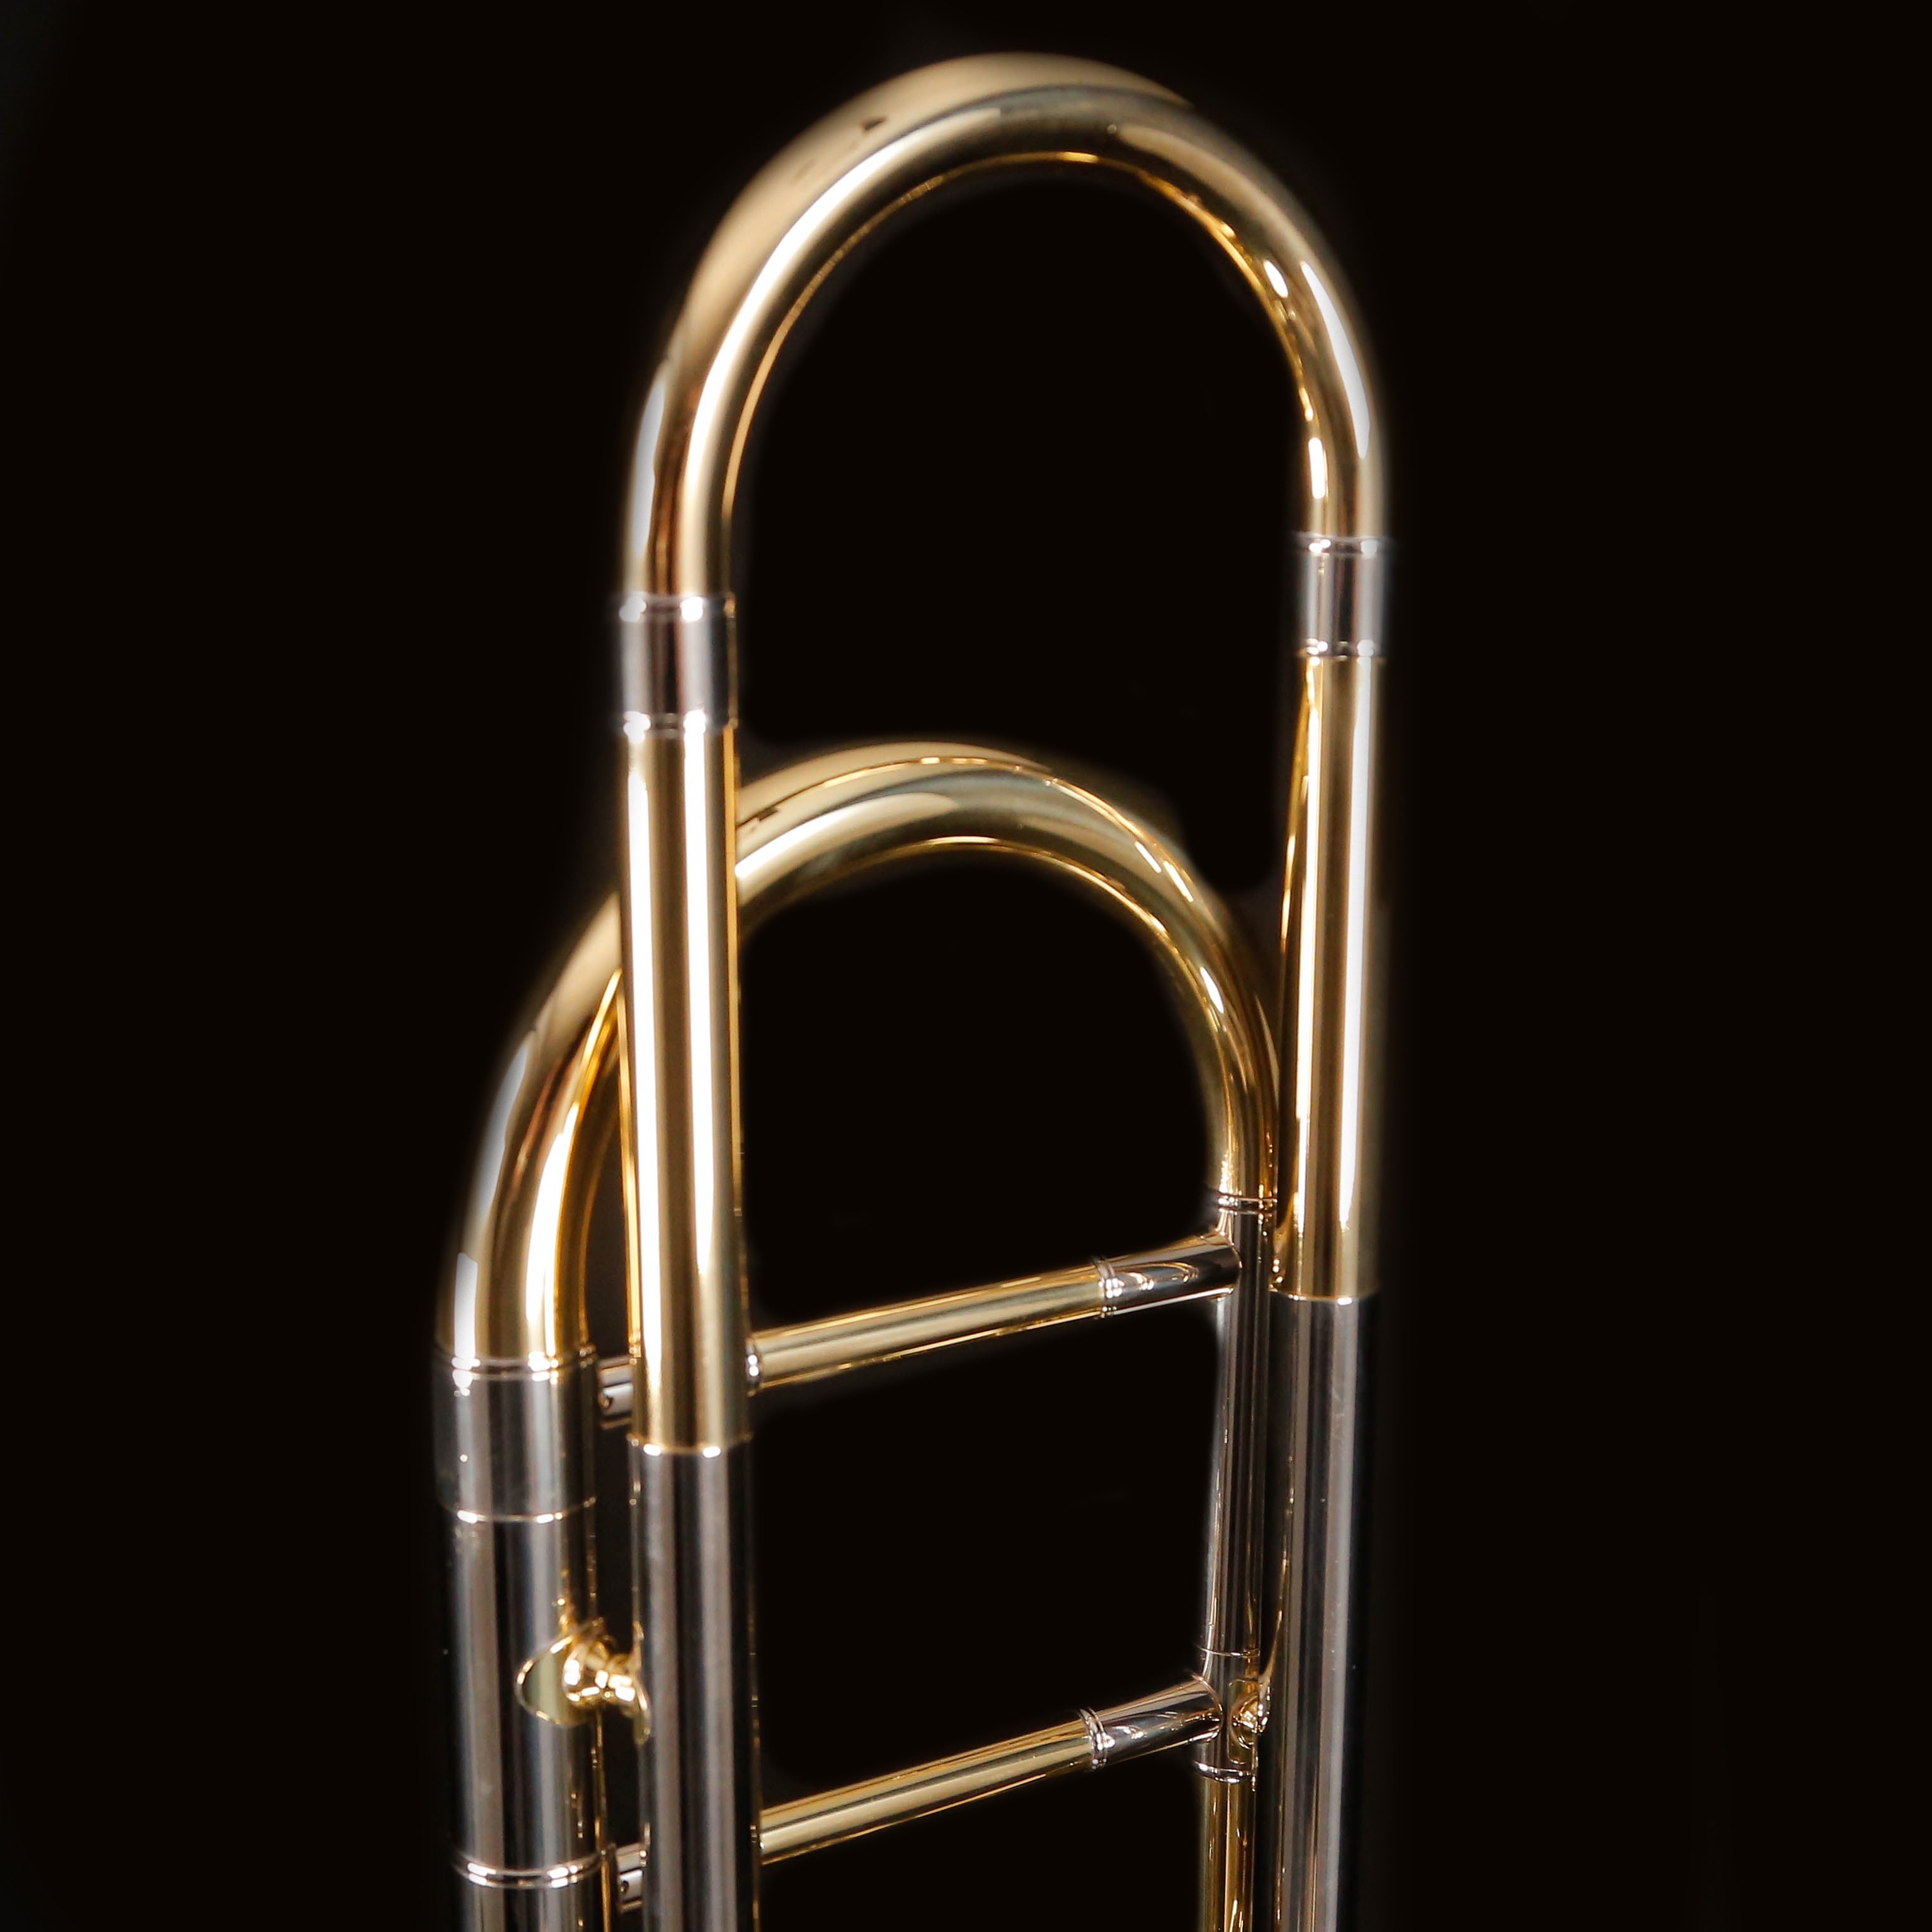 Bach BTB411 Tenor Trombone w/ F Rotor, Standard Finish